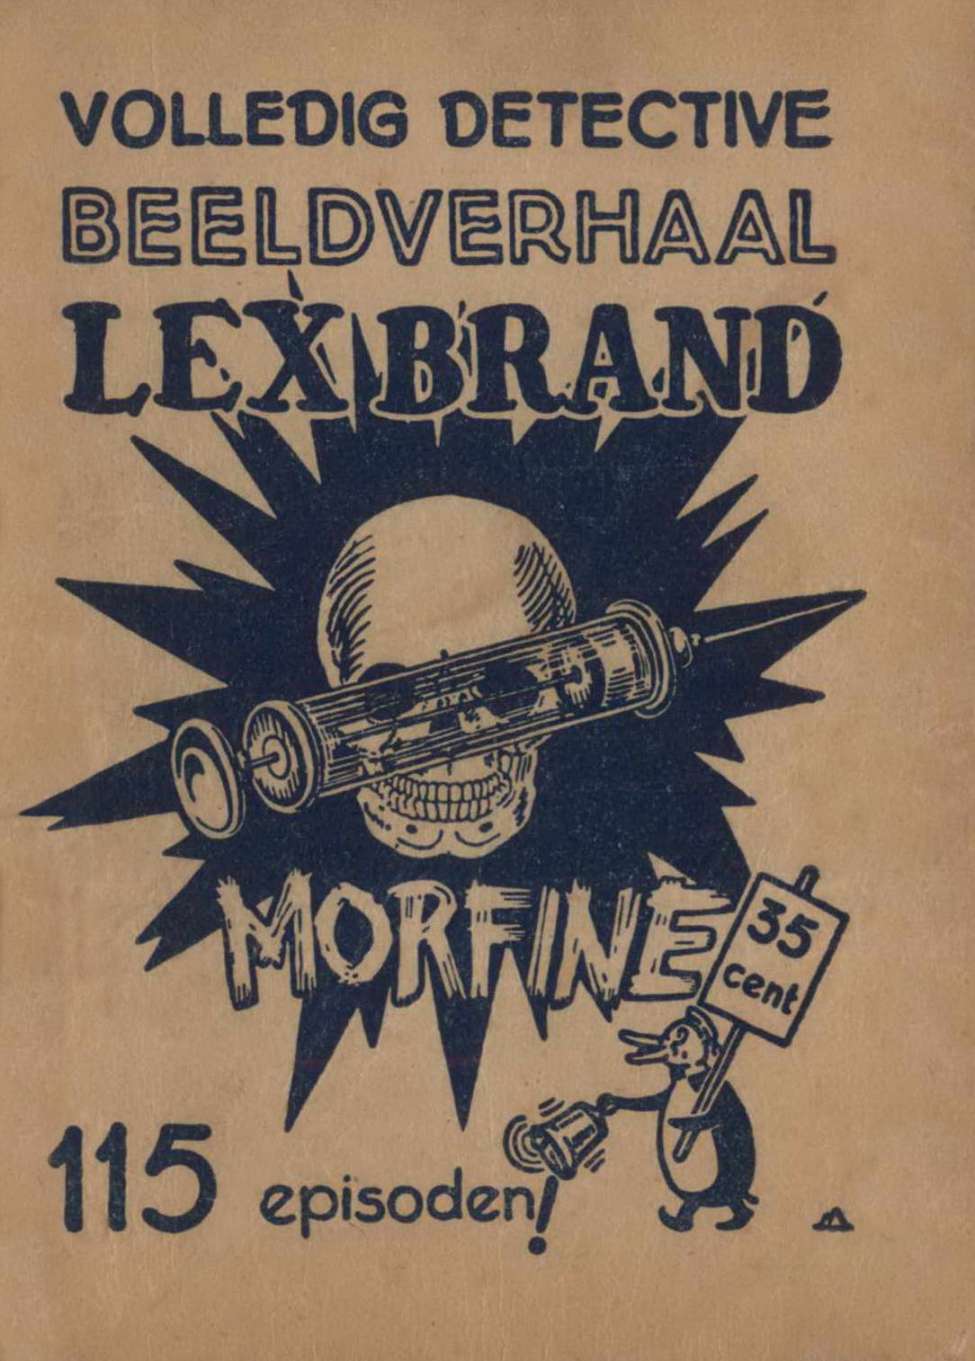 Book Cover For Lex Brand 1 - Morfine